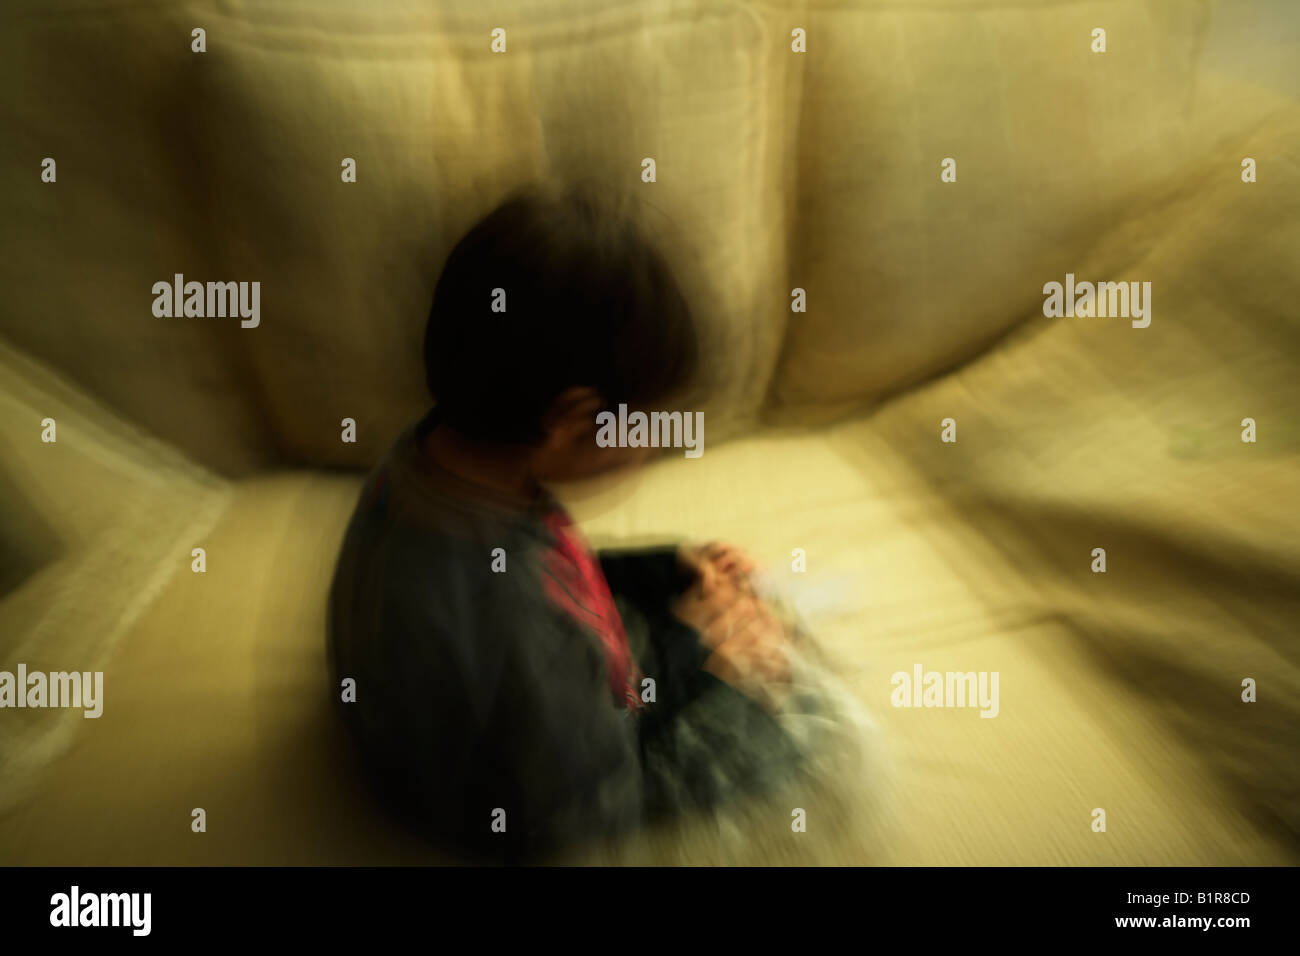 La larga exposición deliberada con el movimiento de la cámara y del sujeto creando imagen abstracta Boy uno de seis años se sienta en el sofá Foto de stock